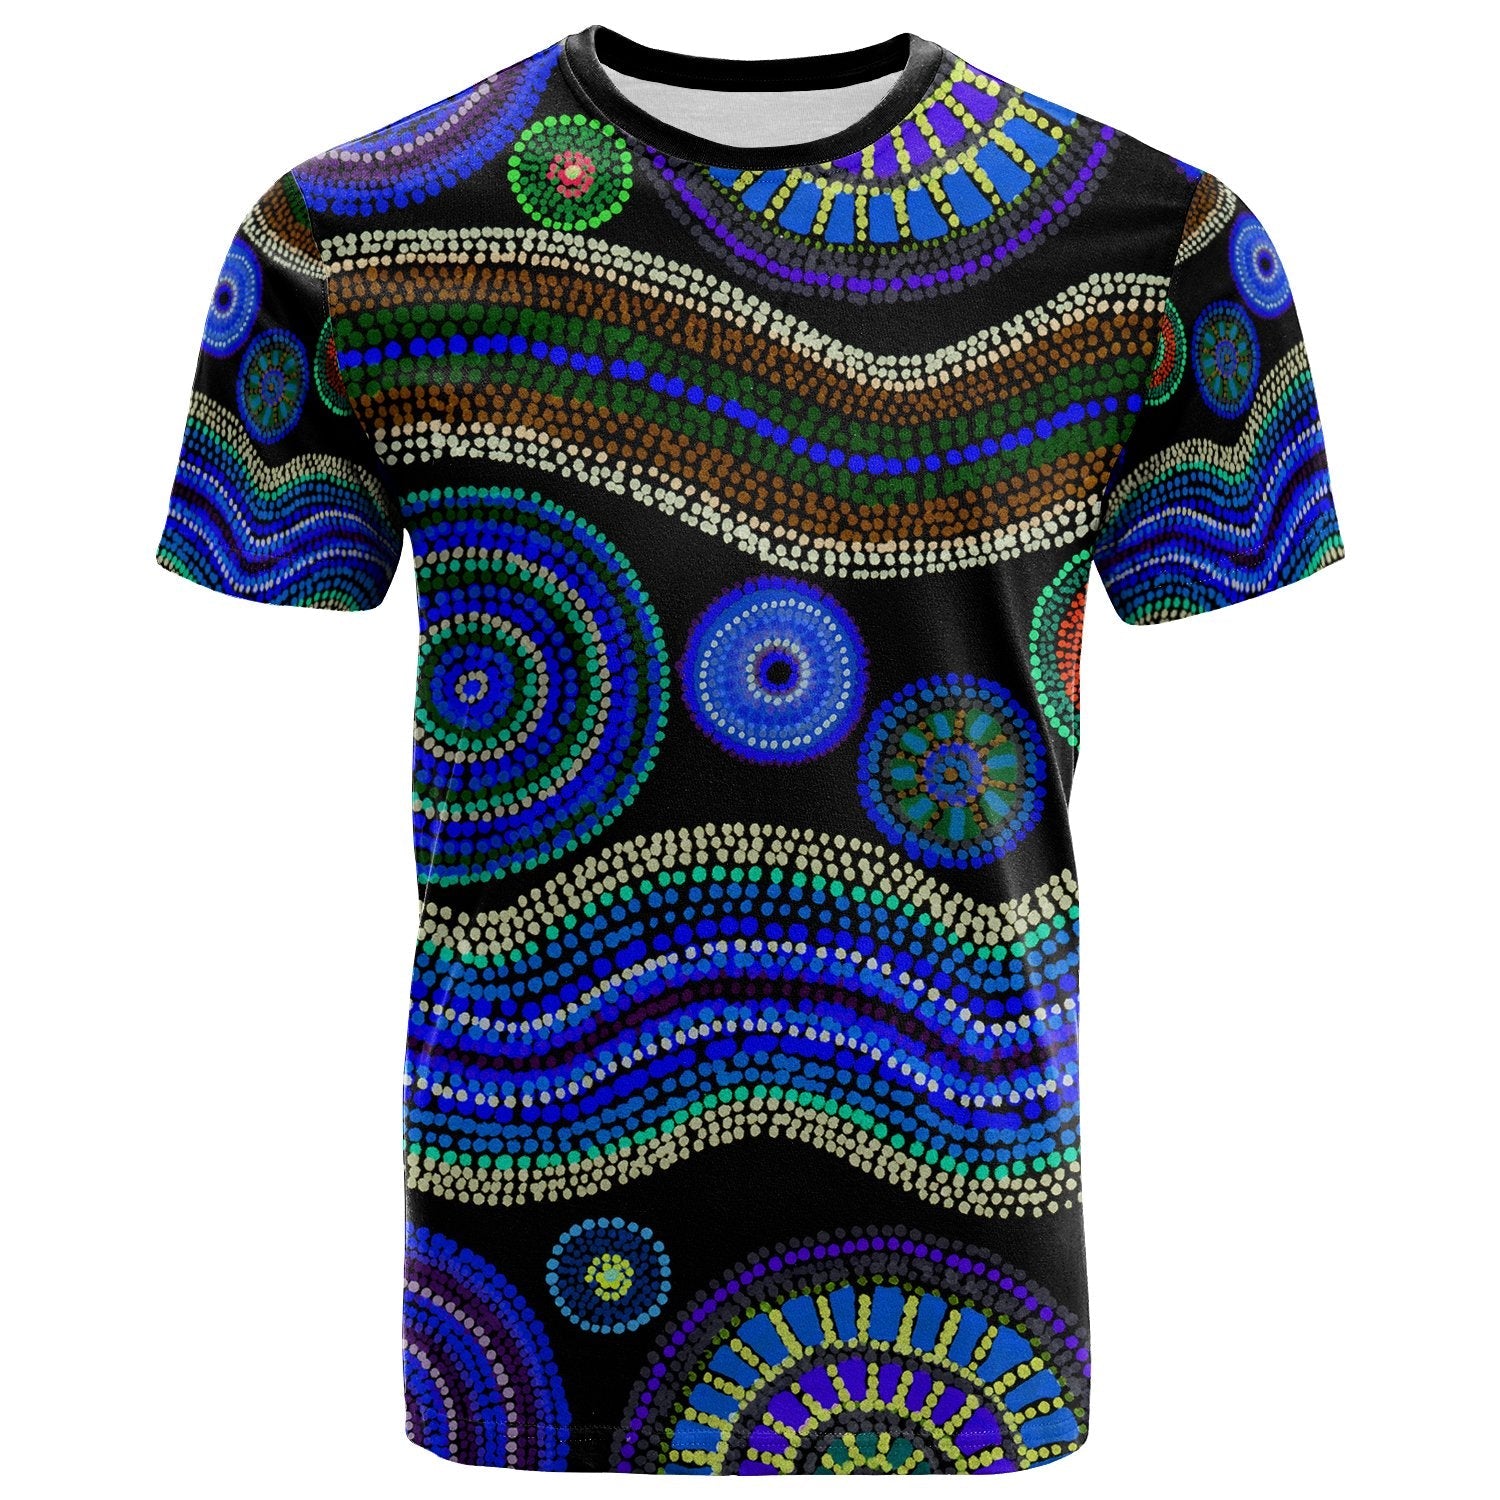 tshirt-aboriginal-dot-unique-style-blue